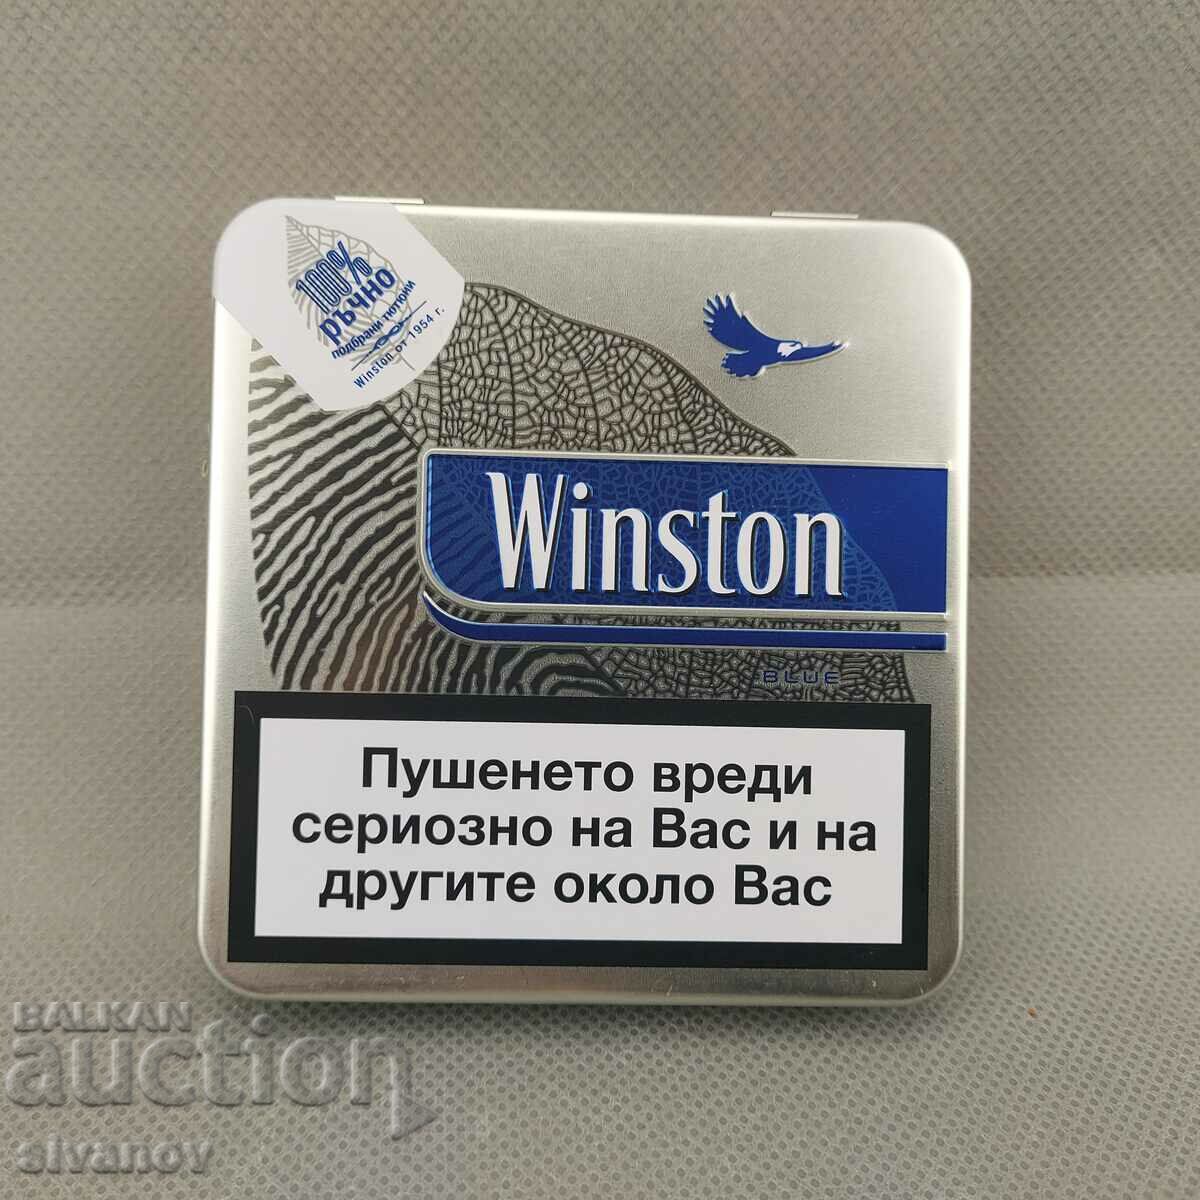 Περιορισμένης έκδοσης Winston Cigarette Metal Snuff Box #1960